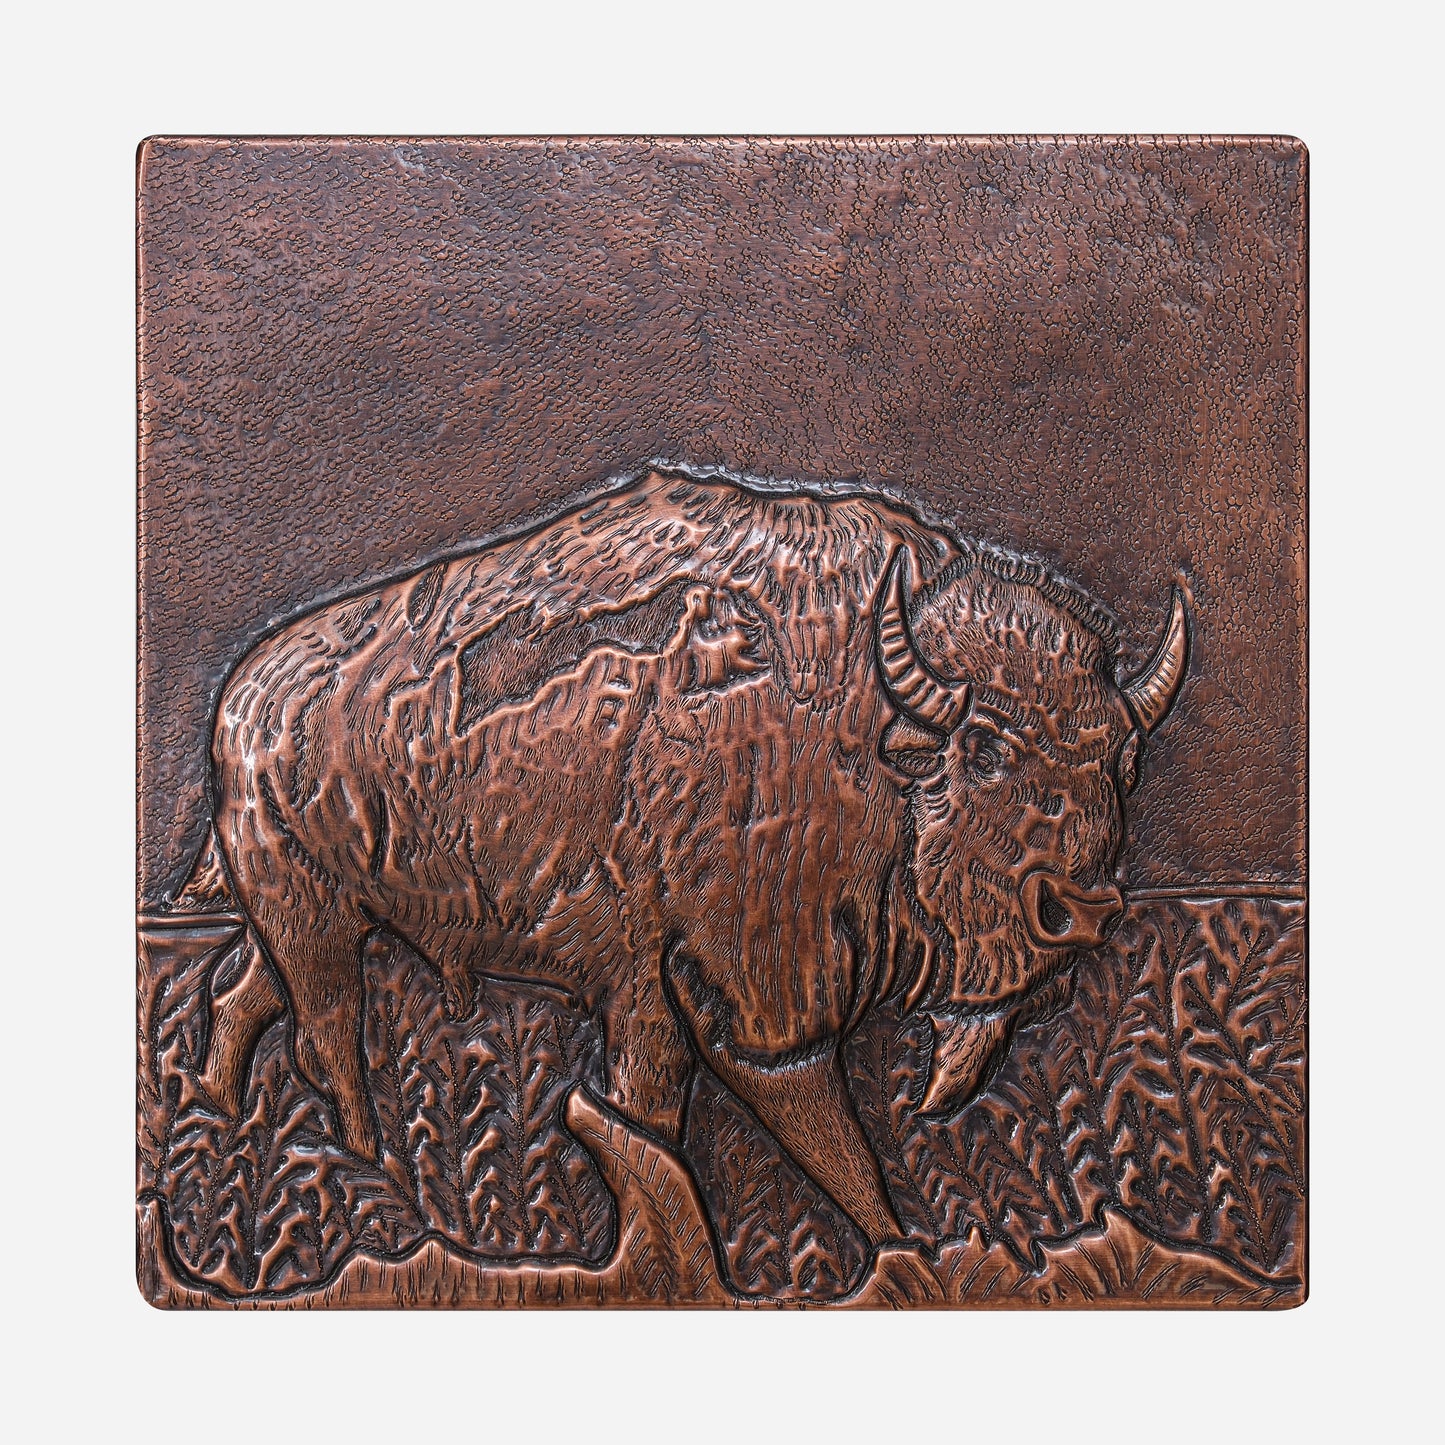 Bison Scene Copper Backsplash Tile